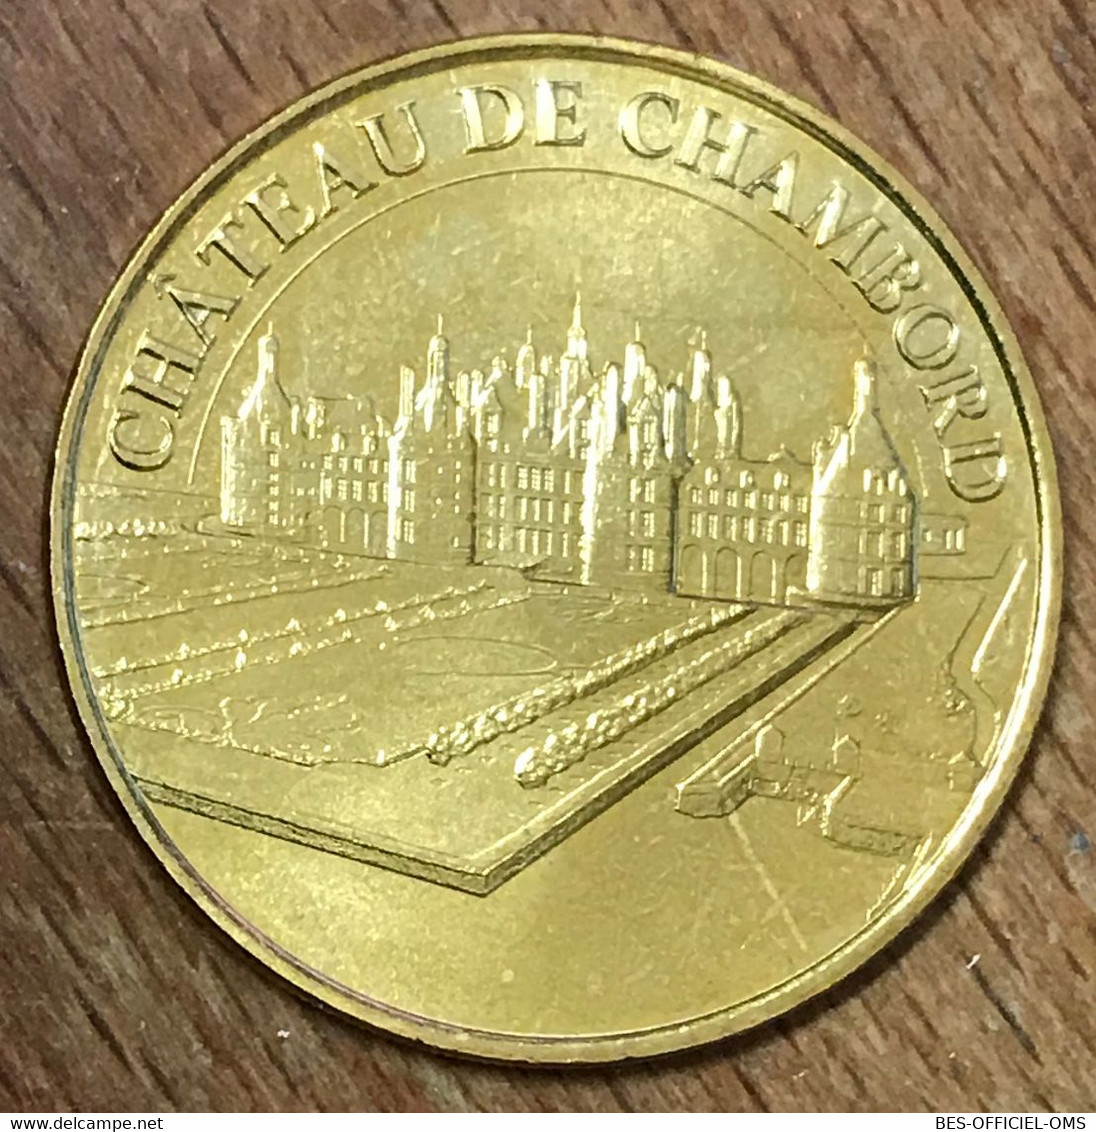 41 CHÂTEAU DE CHAMBORD MDP 2018 MINI MÉDAILLE SOUVENIR MONNAIE DE PARIS JETON TOURISTIQUE MEDALS COINS TOKENS - 2018